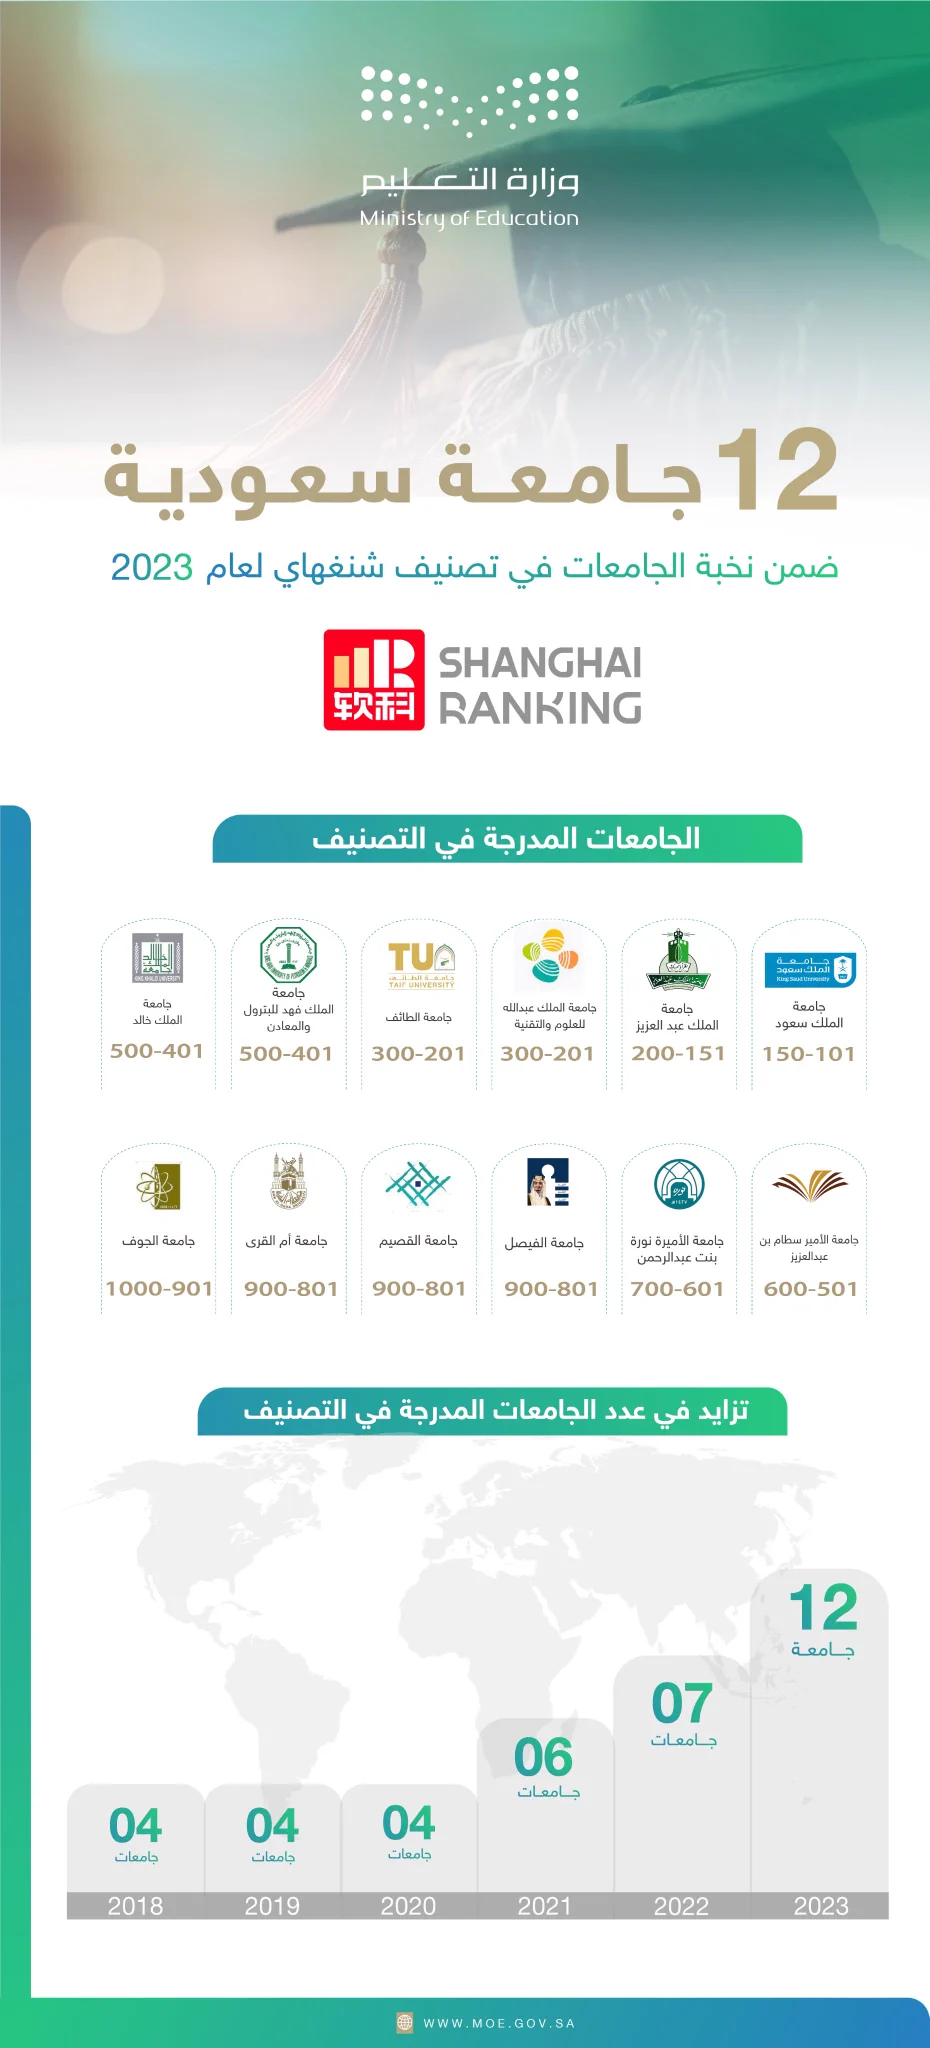 12 جامعة سعودية ضمن نخبة الجامعات في تصنيف "شنغهاي" لعام 2023 - معلومات  مباشر